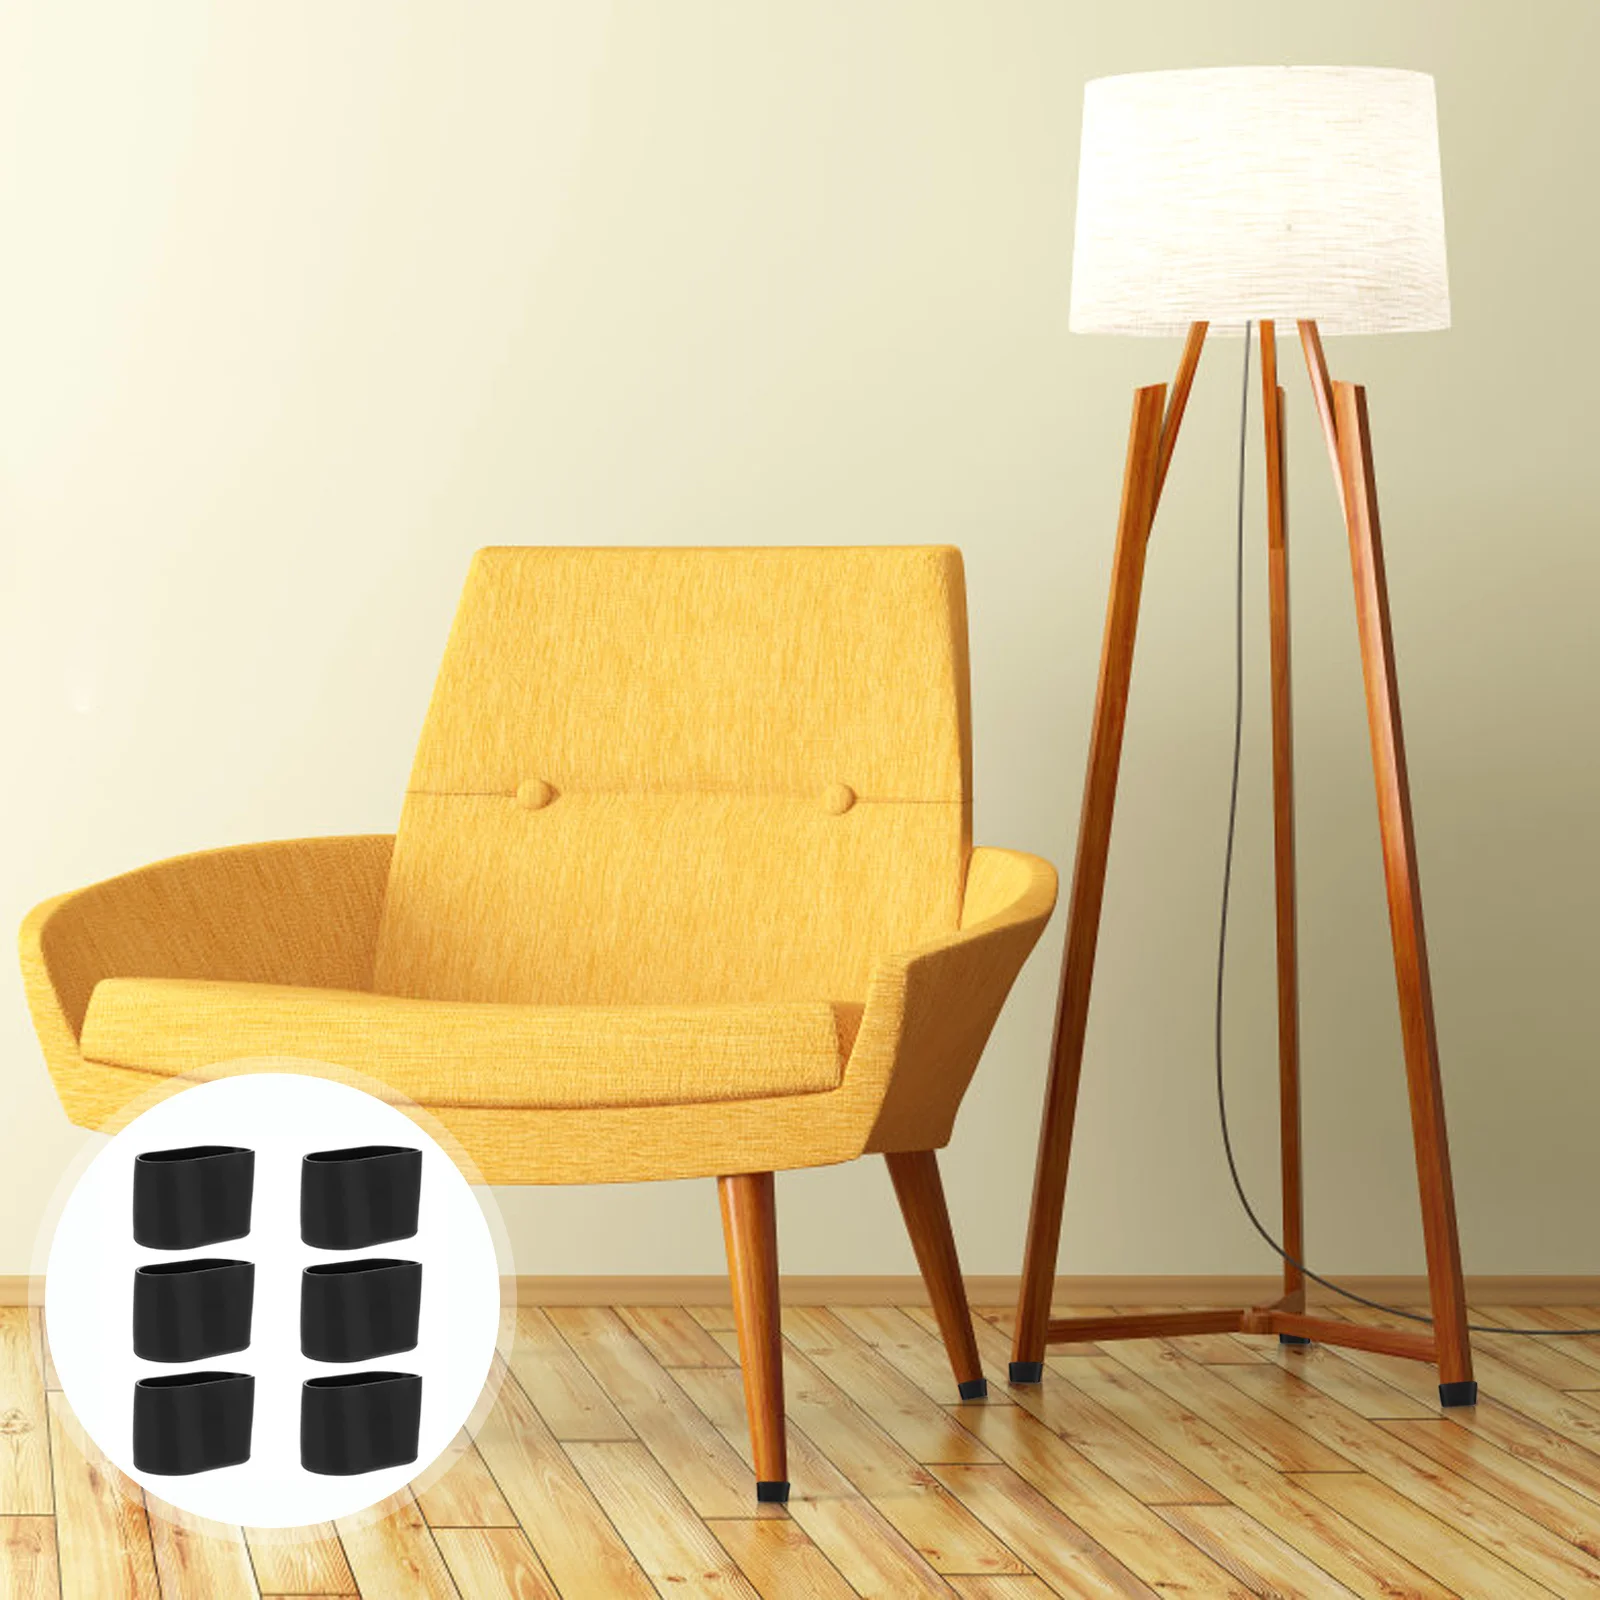 

24Pcs Furniture Feet Covers Chair Leg Floor Protector Anti-Slip Chair Leg Covers